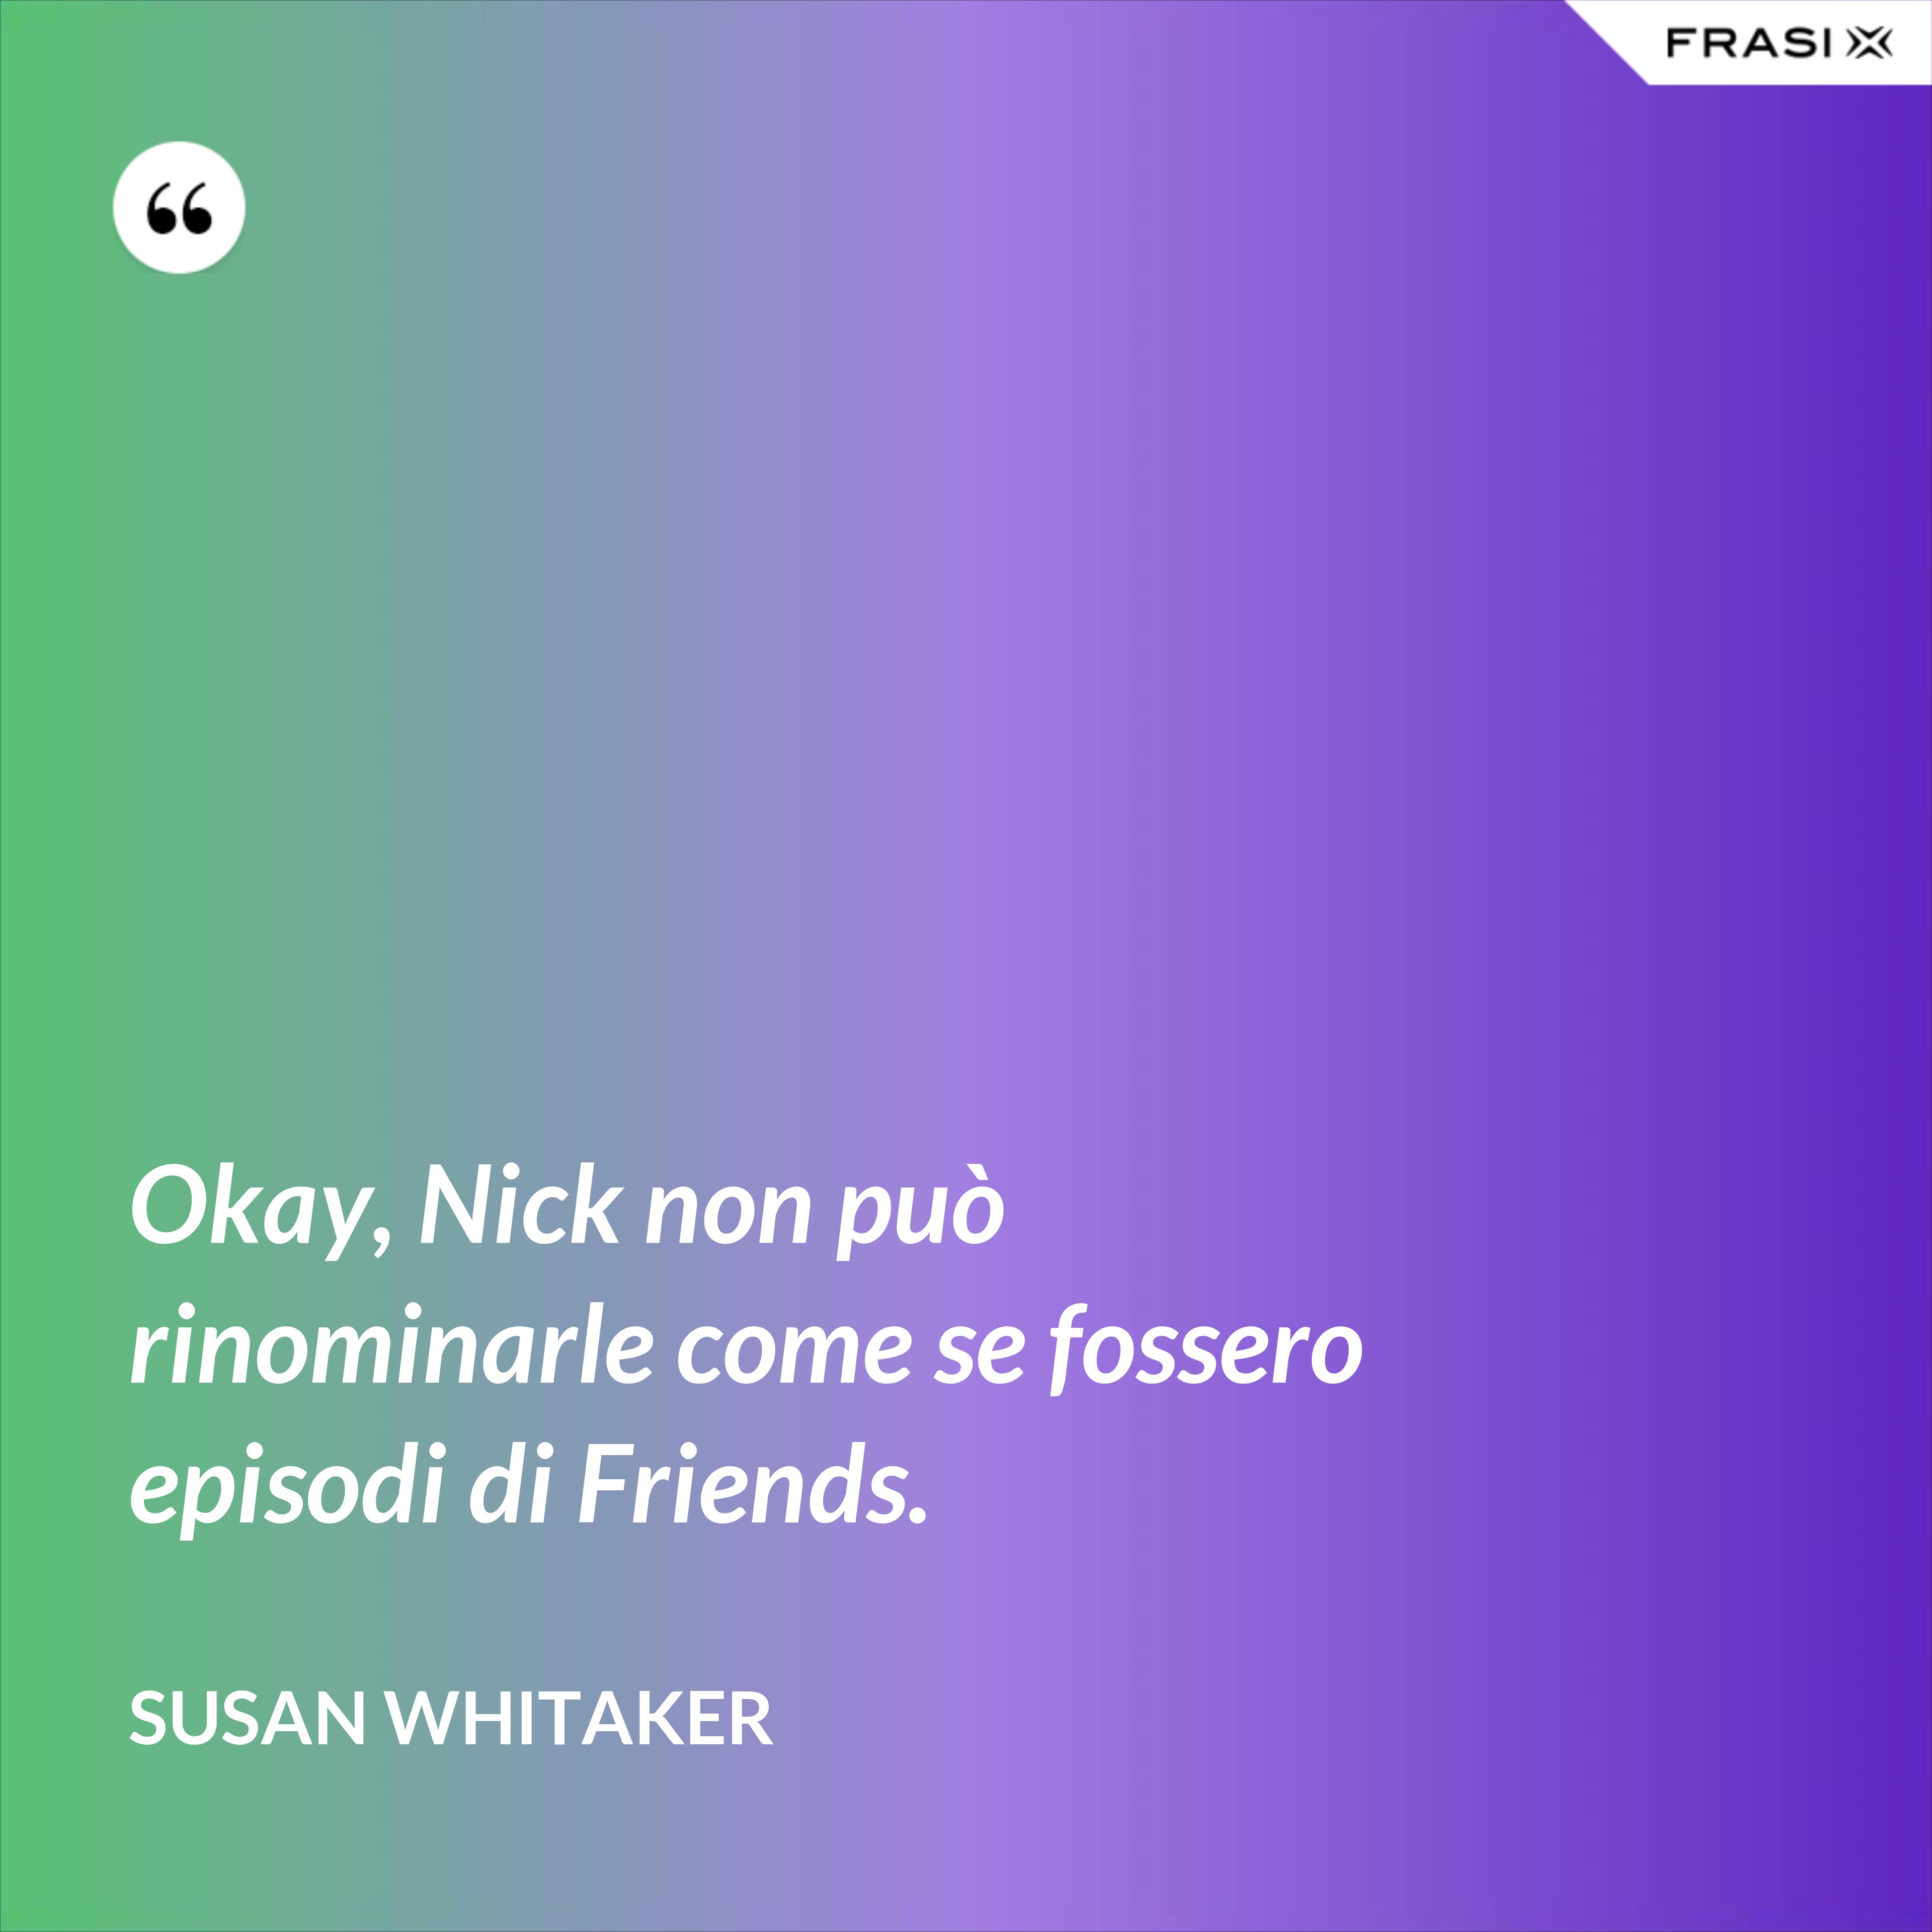 Okay, Nick non può rinominarle come se fossero episodi di Friends. - Susan Whitaker